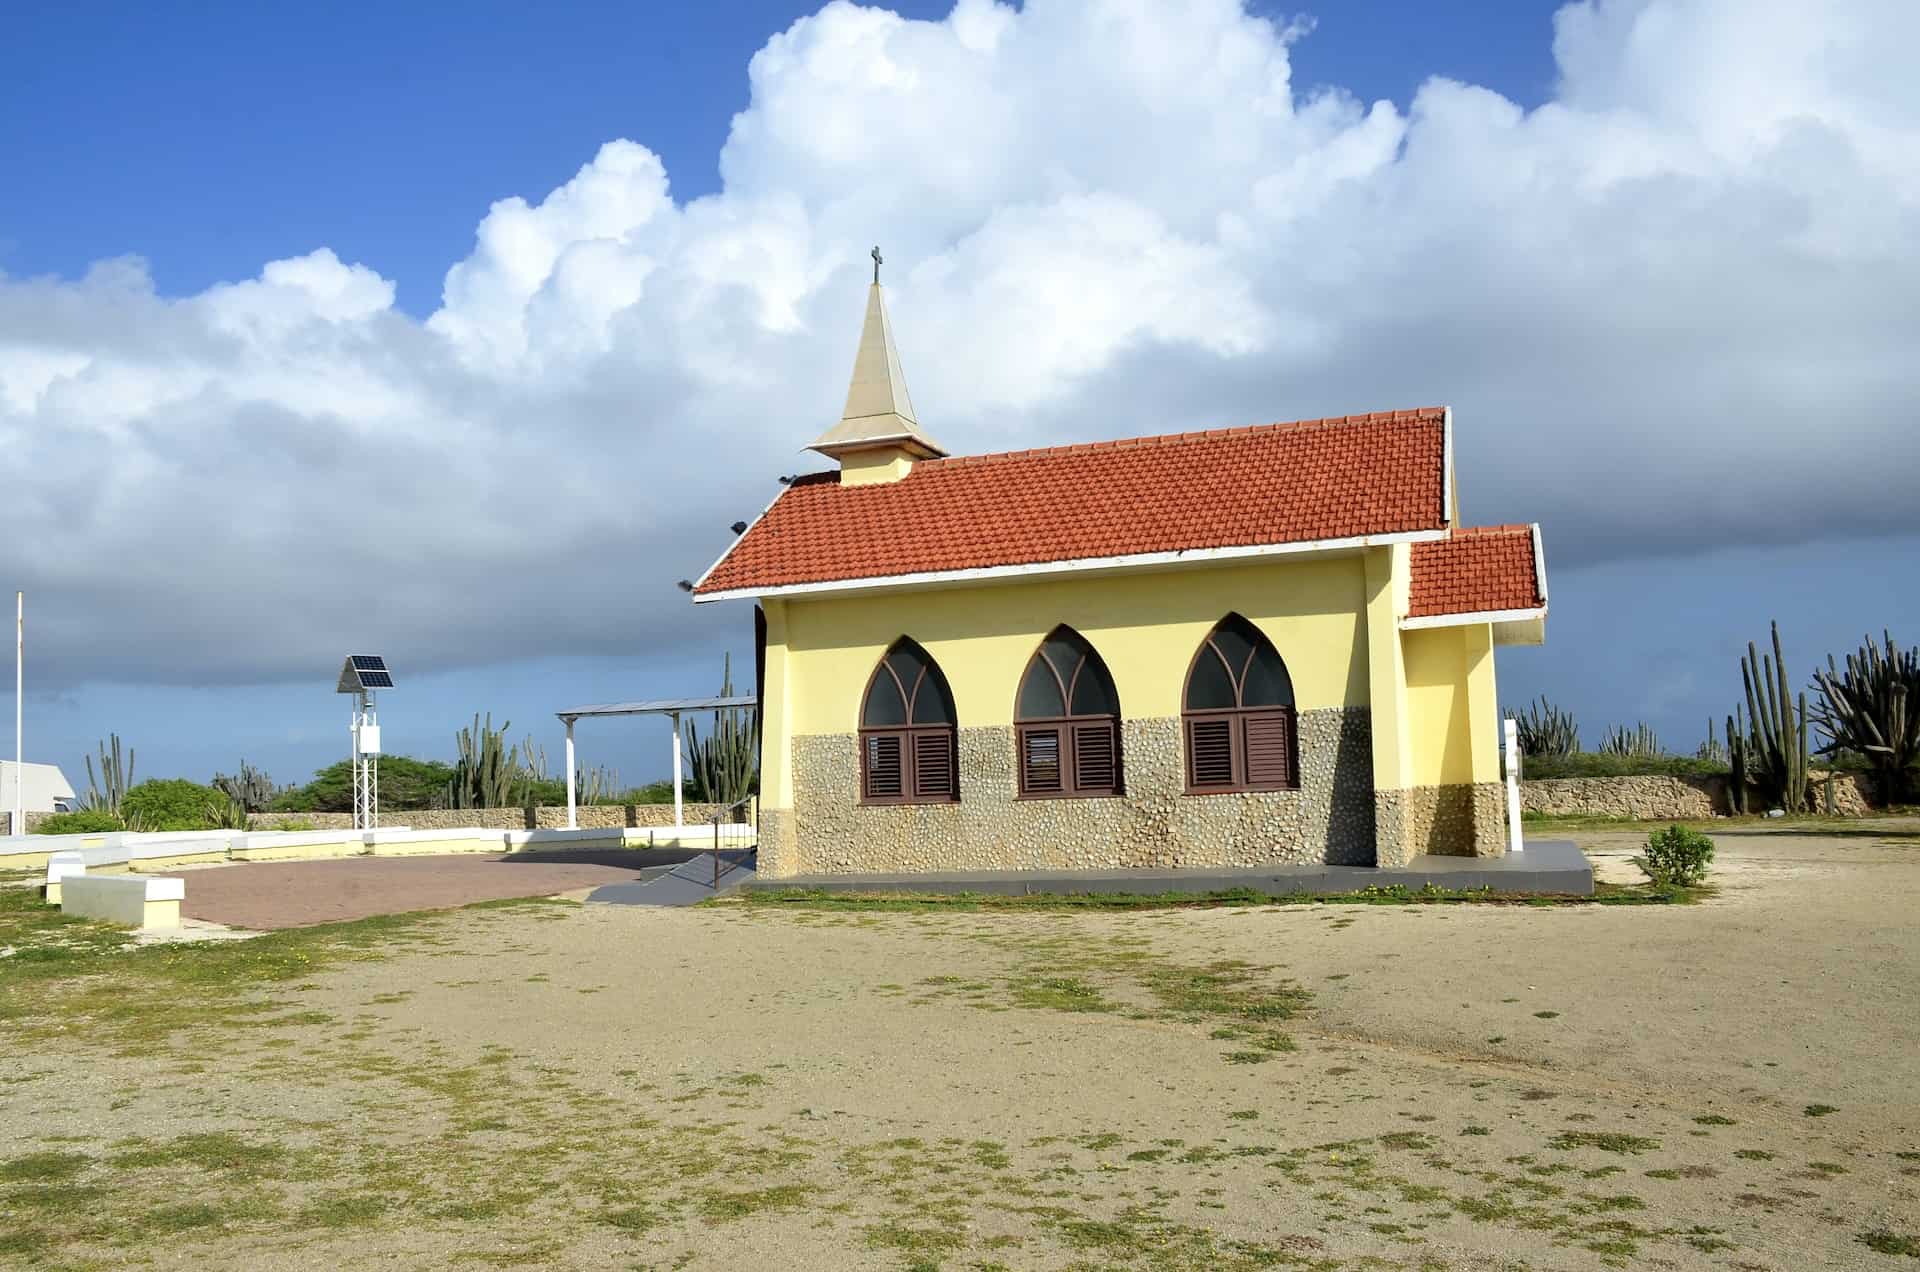 Alto Vista Chapel